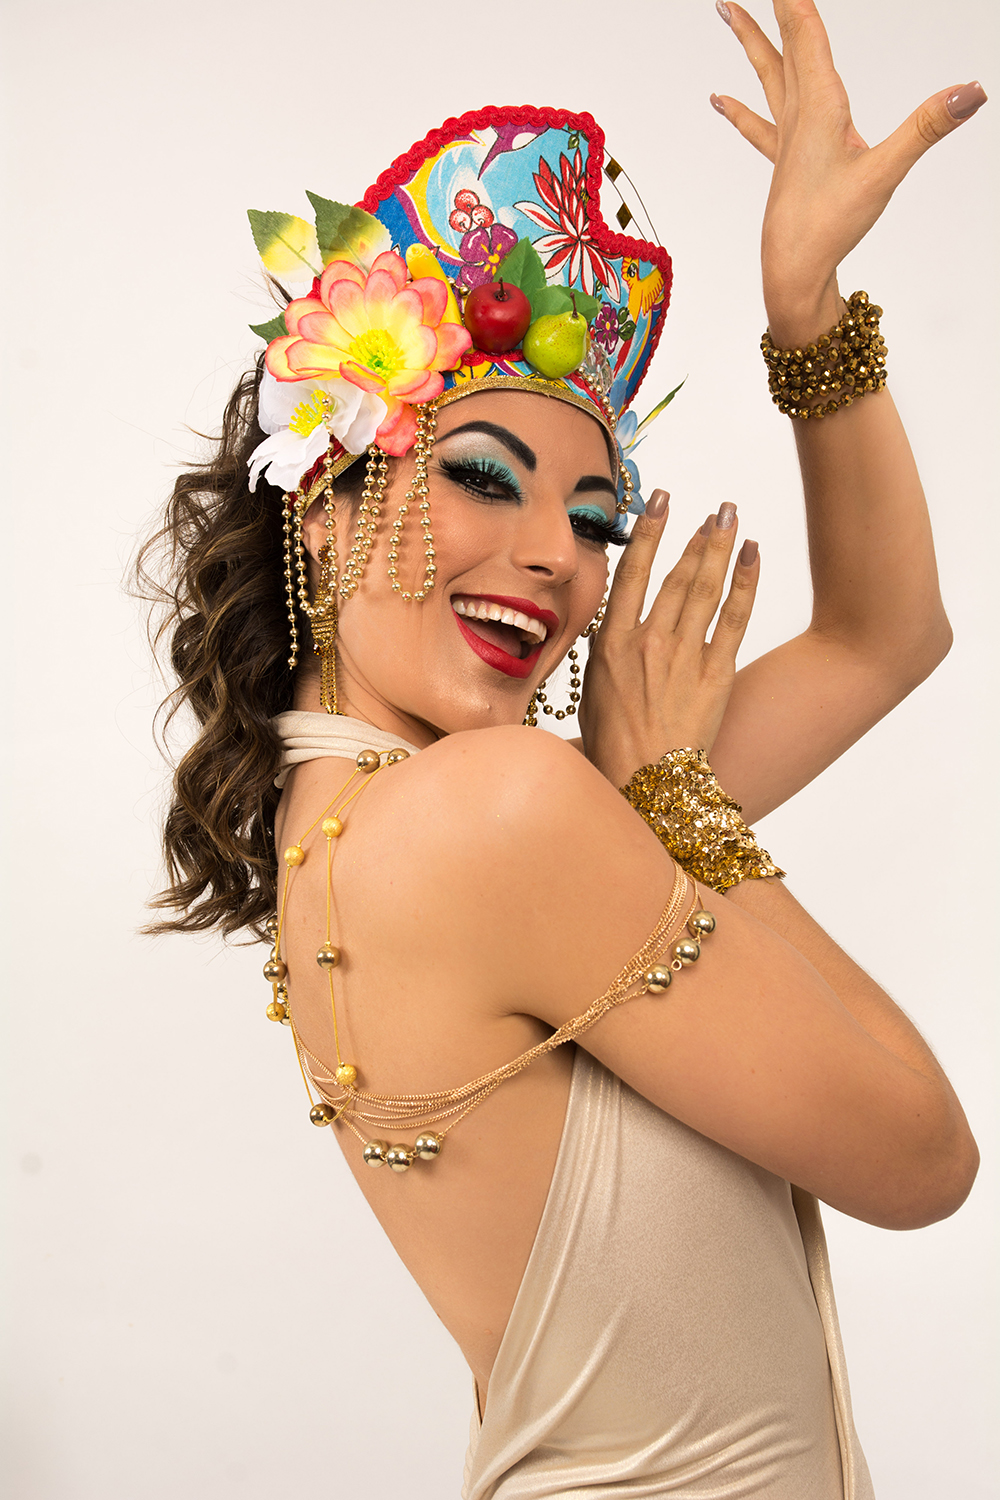 Carnaval Majestic: Carmen Miranda